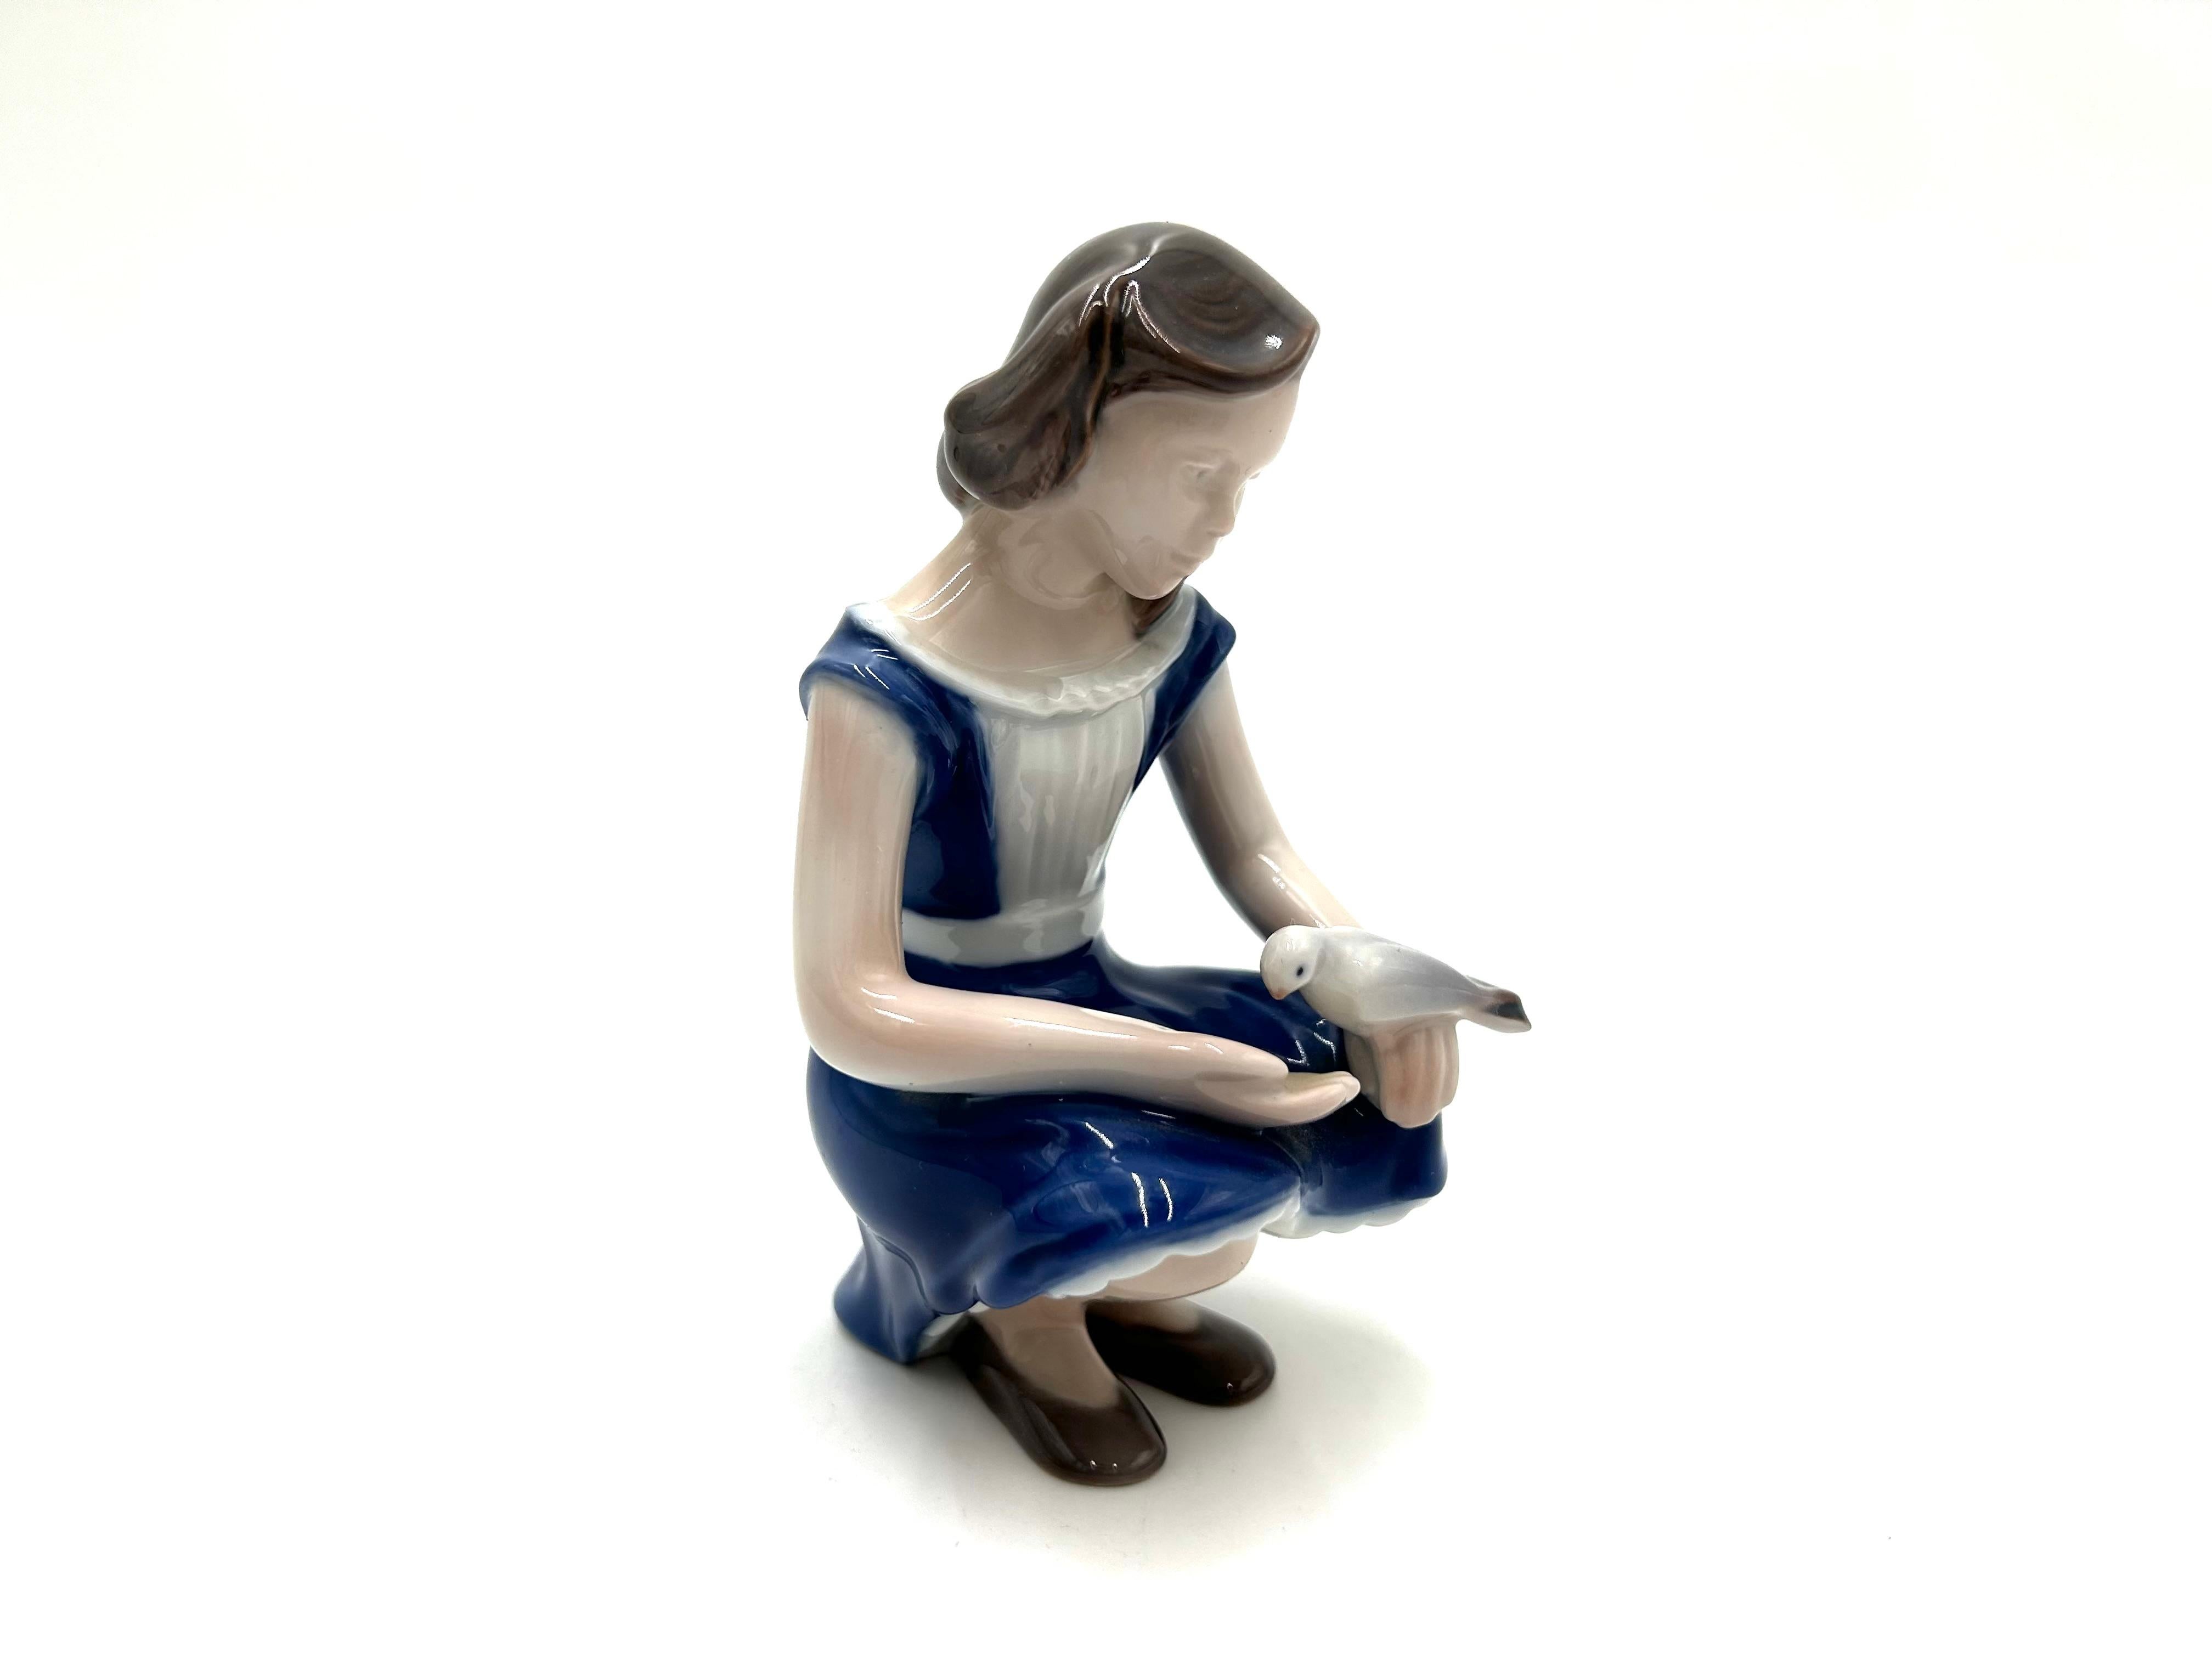 Porzellanfigur eines Mädchens mit einem Vogel

Produziert von der dänischen Manufaktur Bing & Grondahl

Die Marke wird in den 1960er Jahren verwendet.

Sehr guter Zustand ohne Schäden

Höhe: 13cm

Breite: 8cm

Tiefe: 8 cm